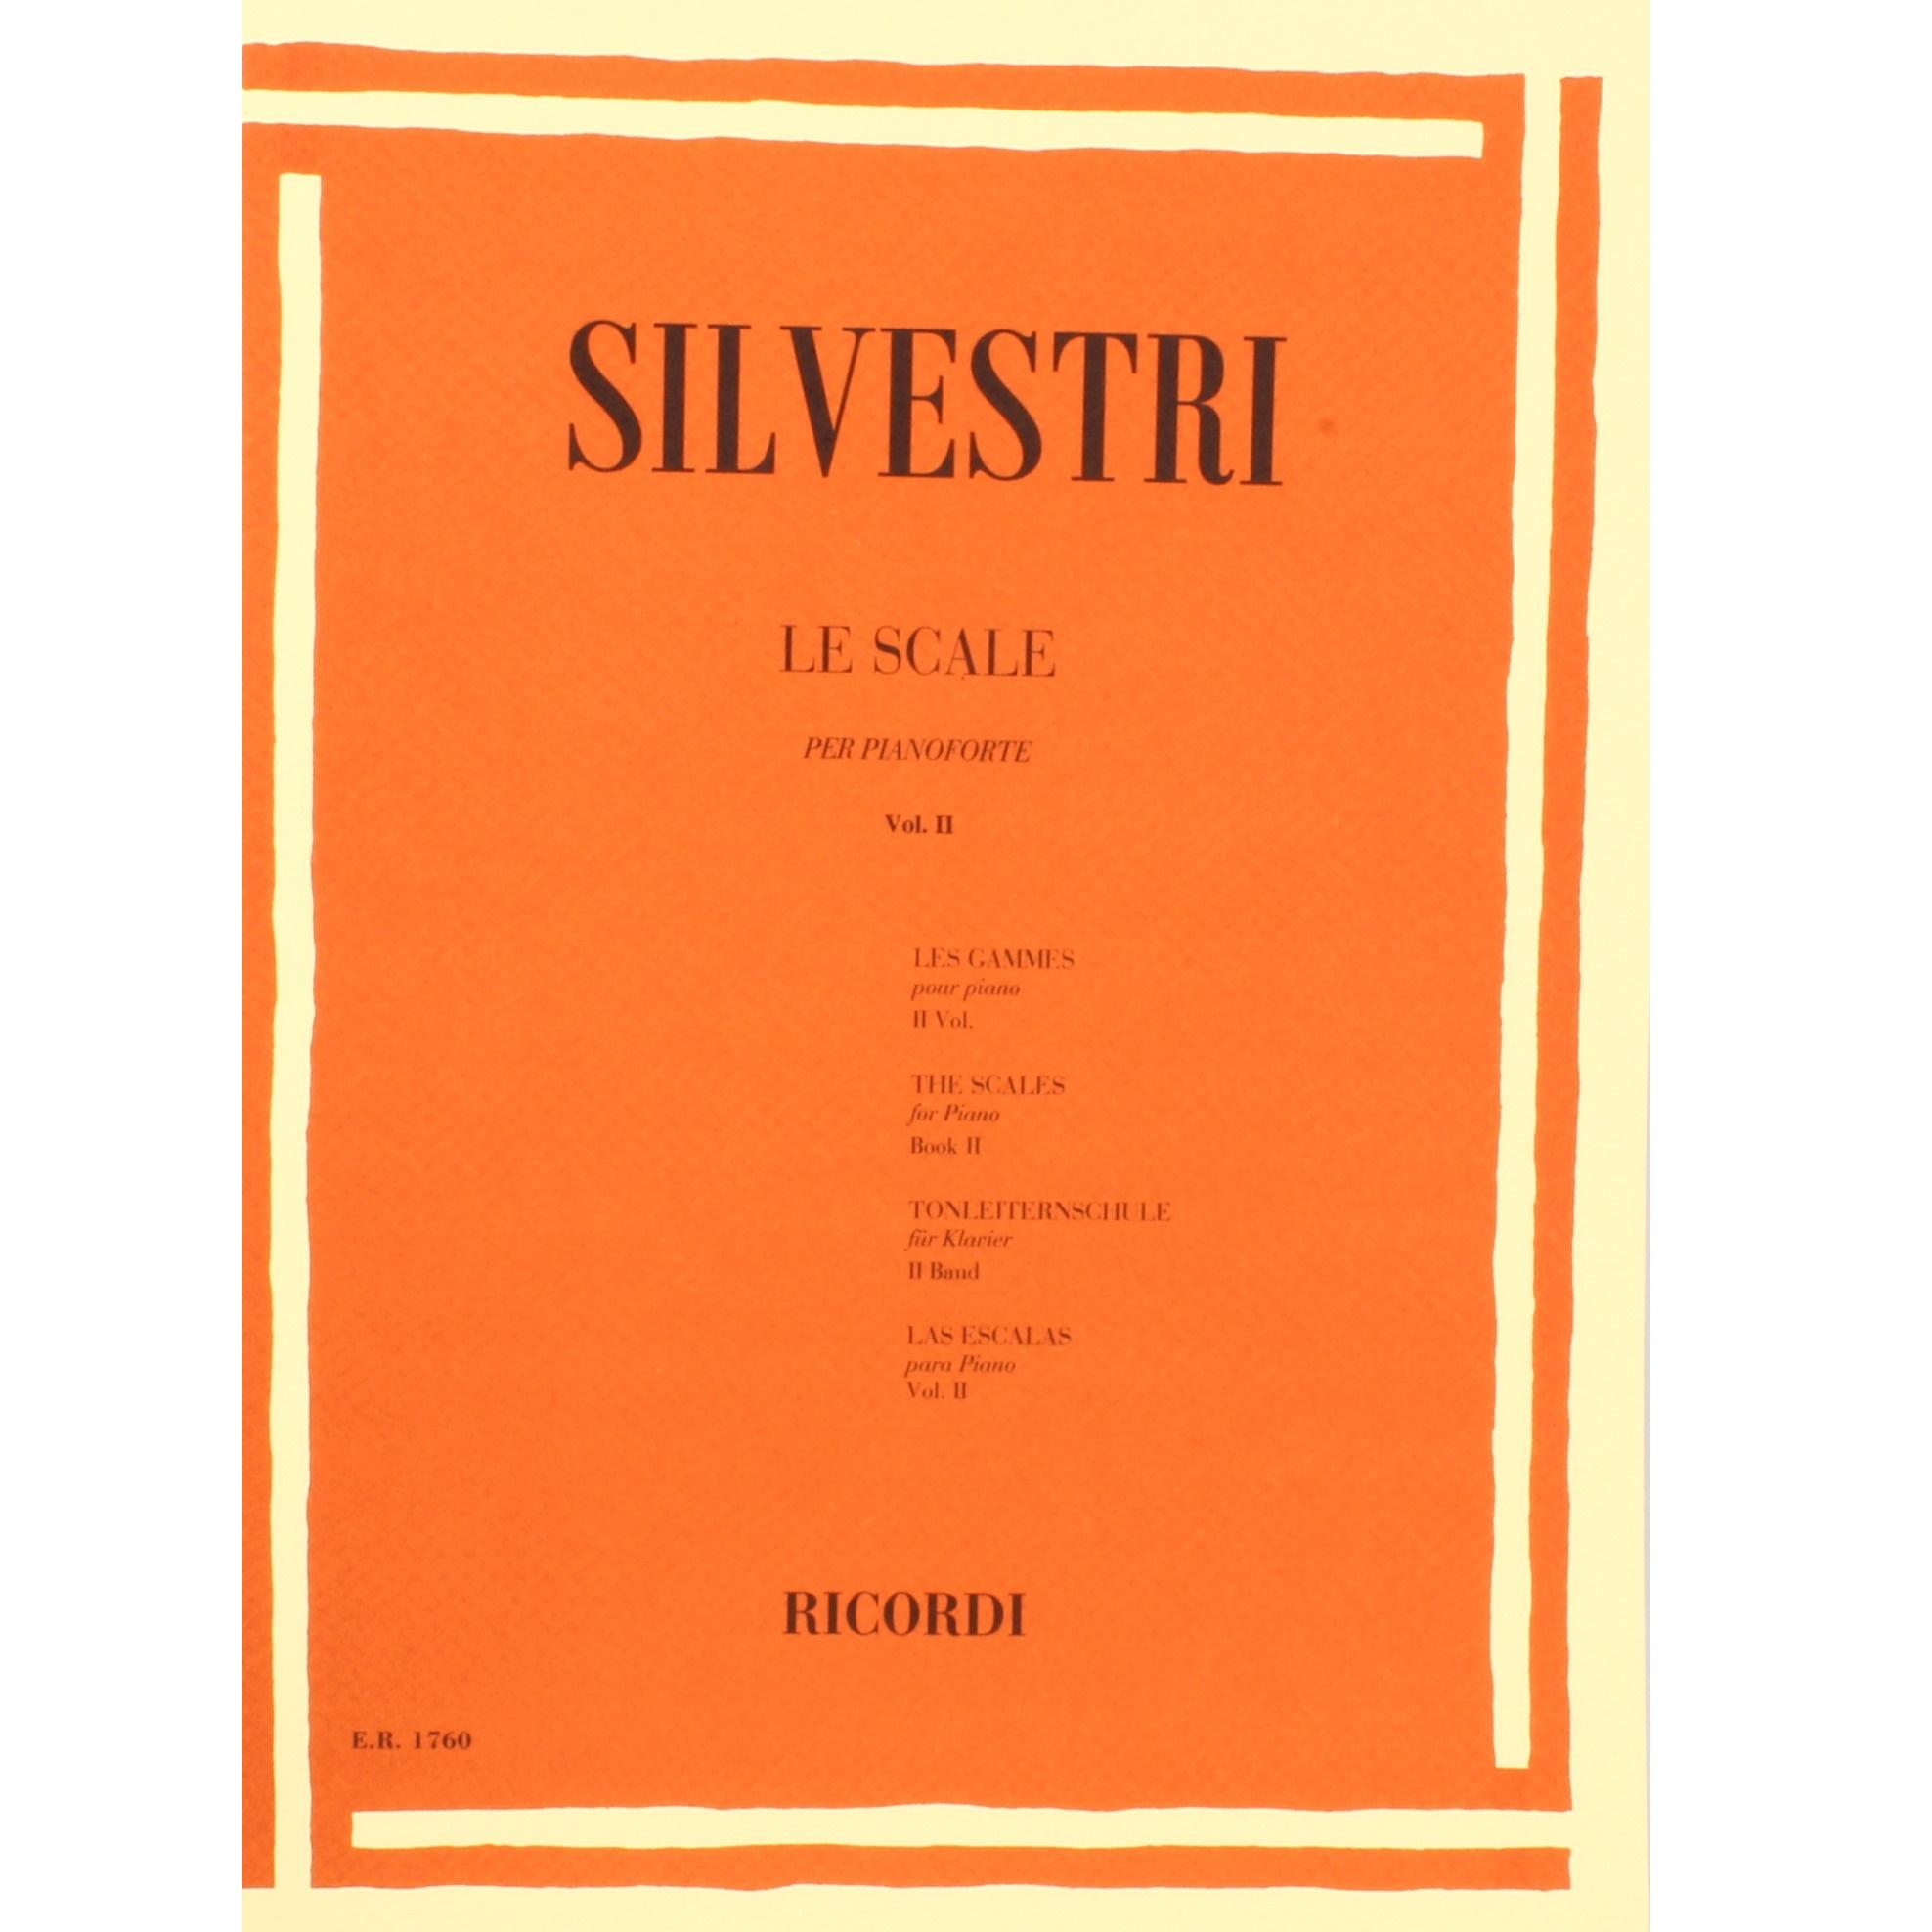 Silvestri LE SCALE per pianoforte Vol. II - Ricordi